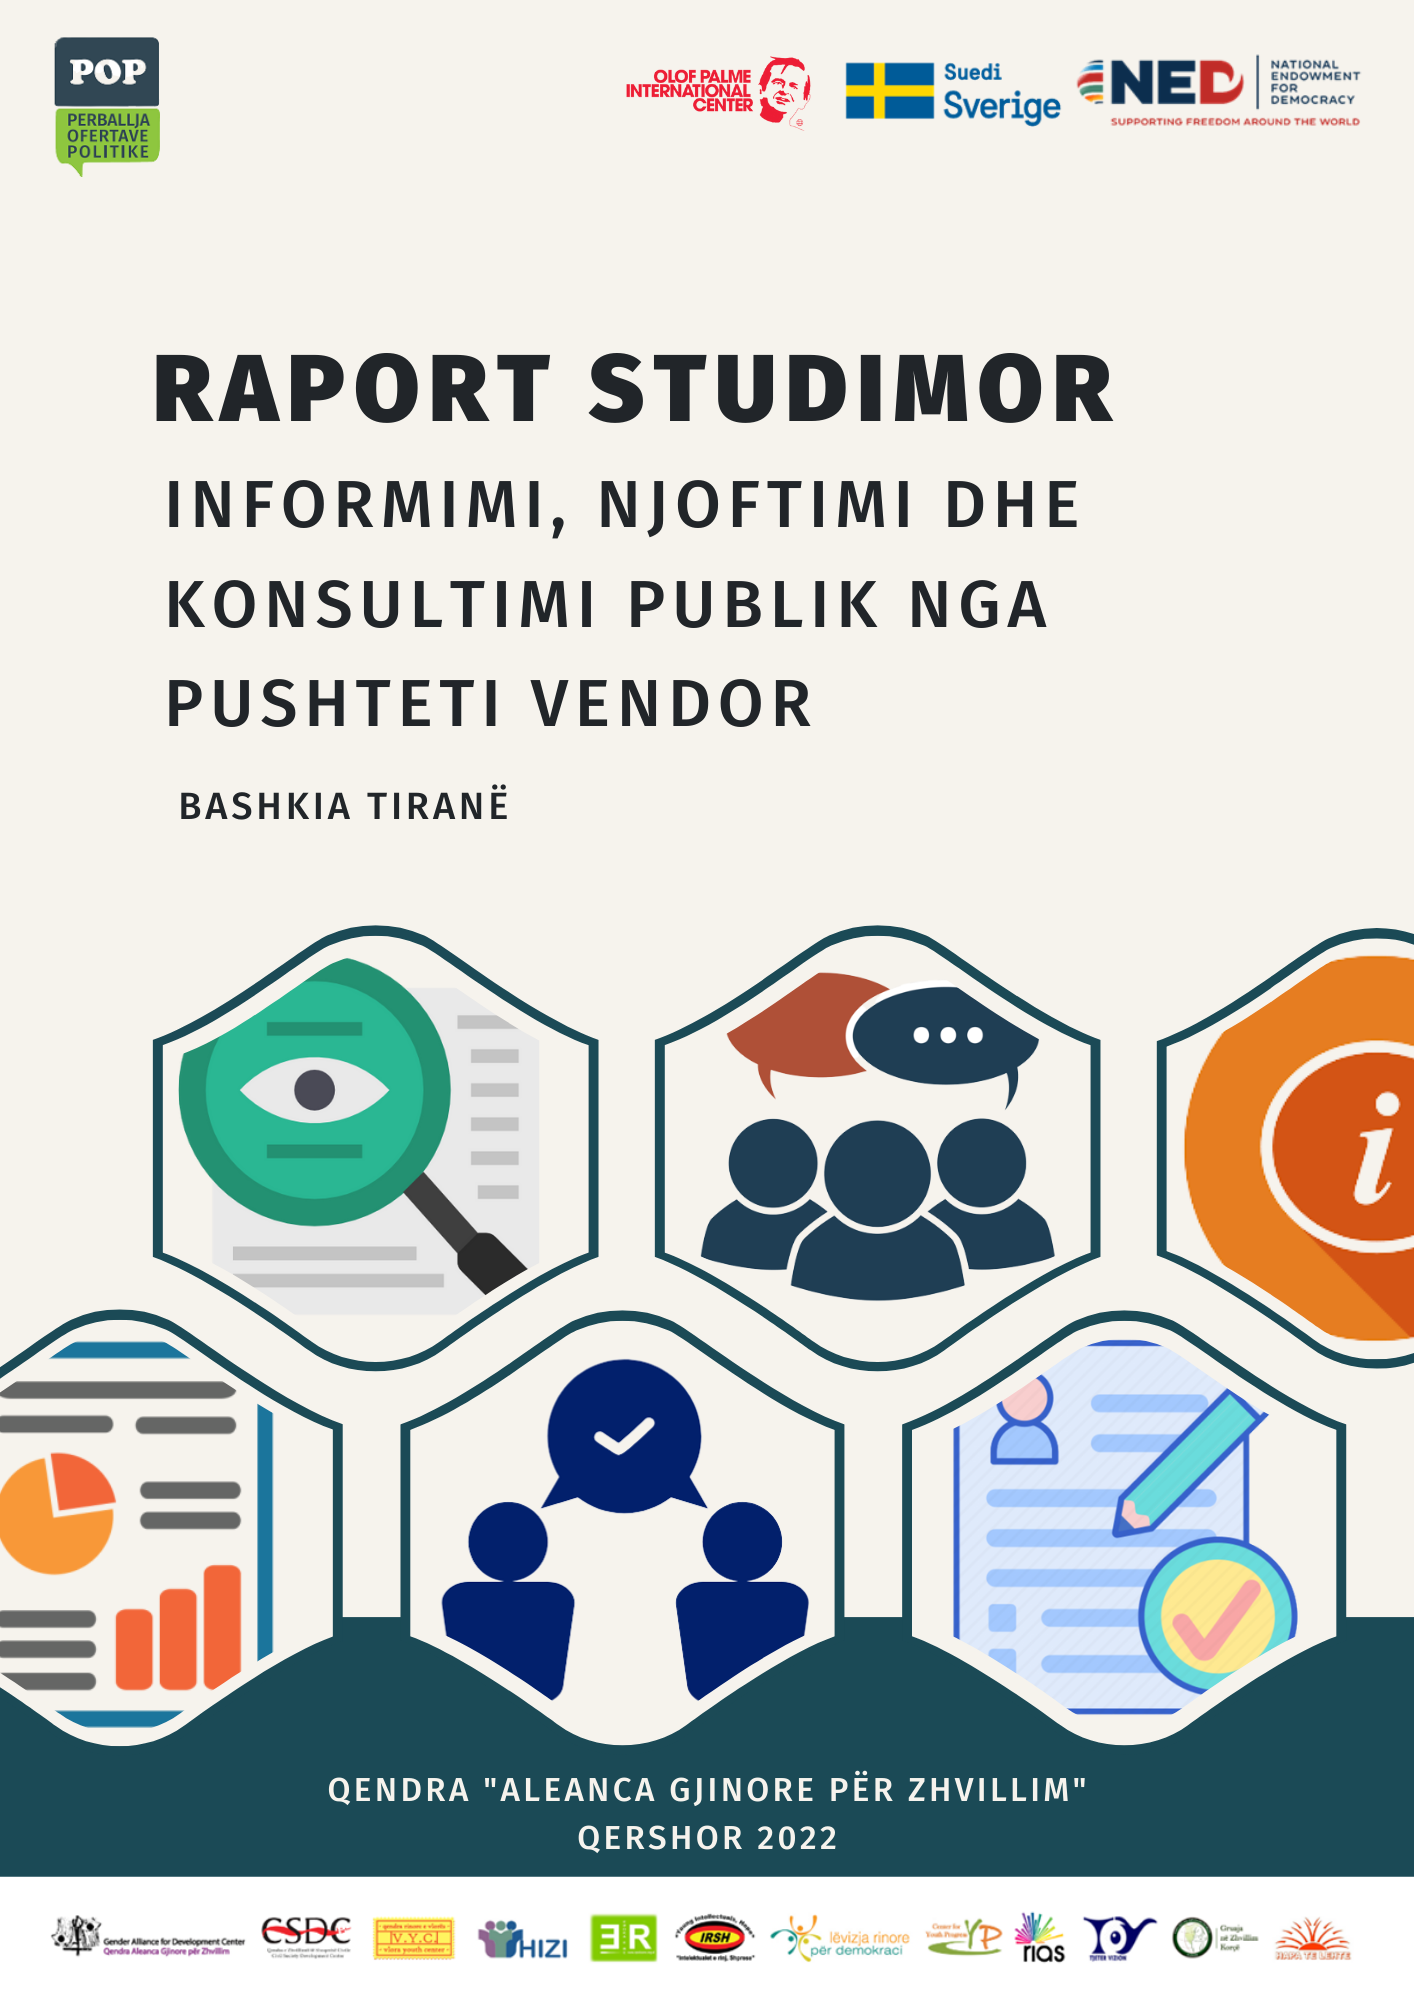 Raporti studimor “Informimi, Njoftimi dhe Konsultimi Publik” – Bashkia Tiranë